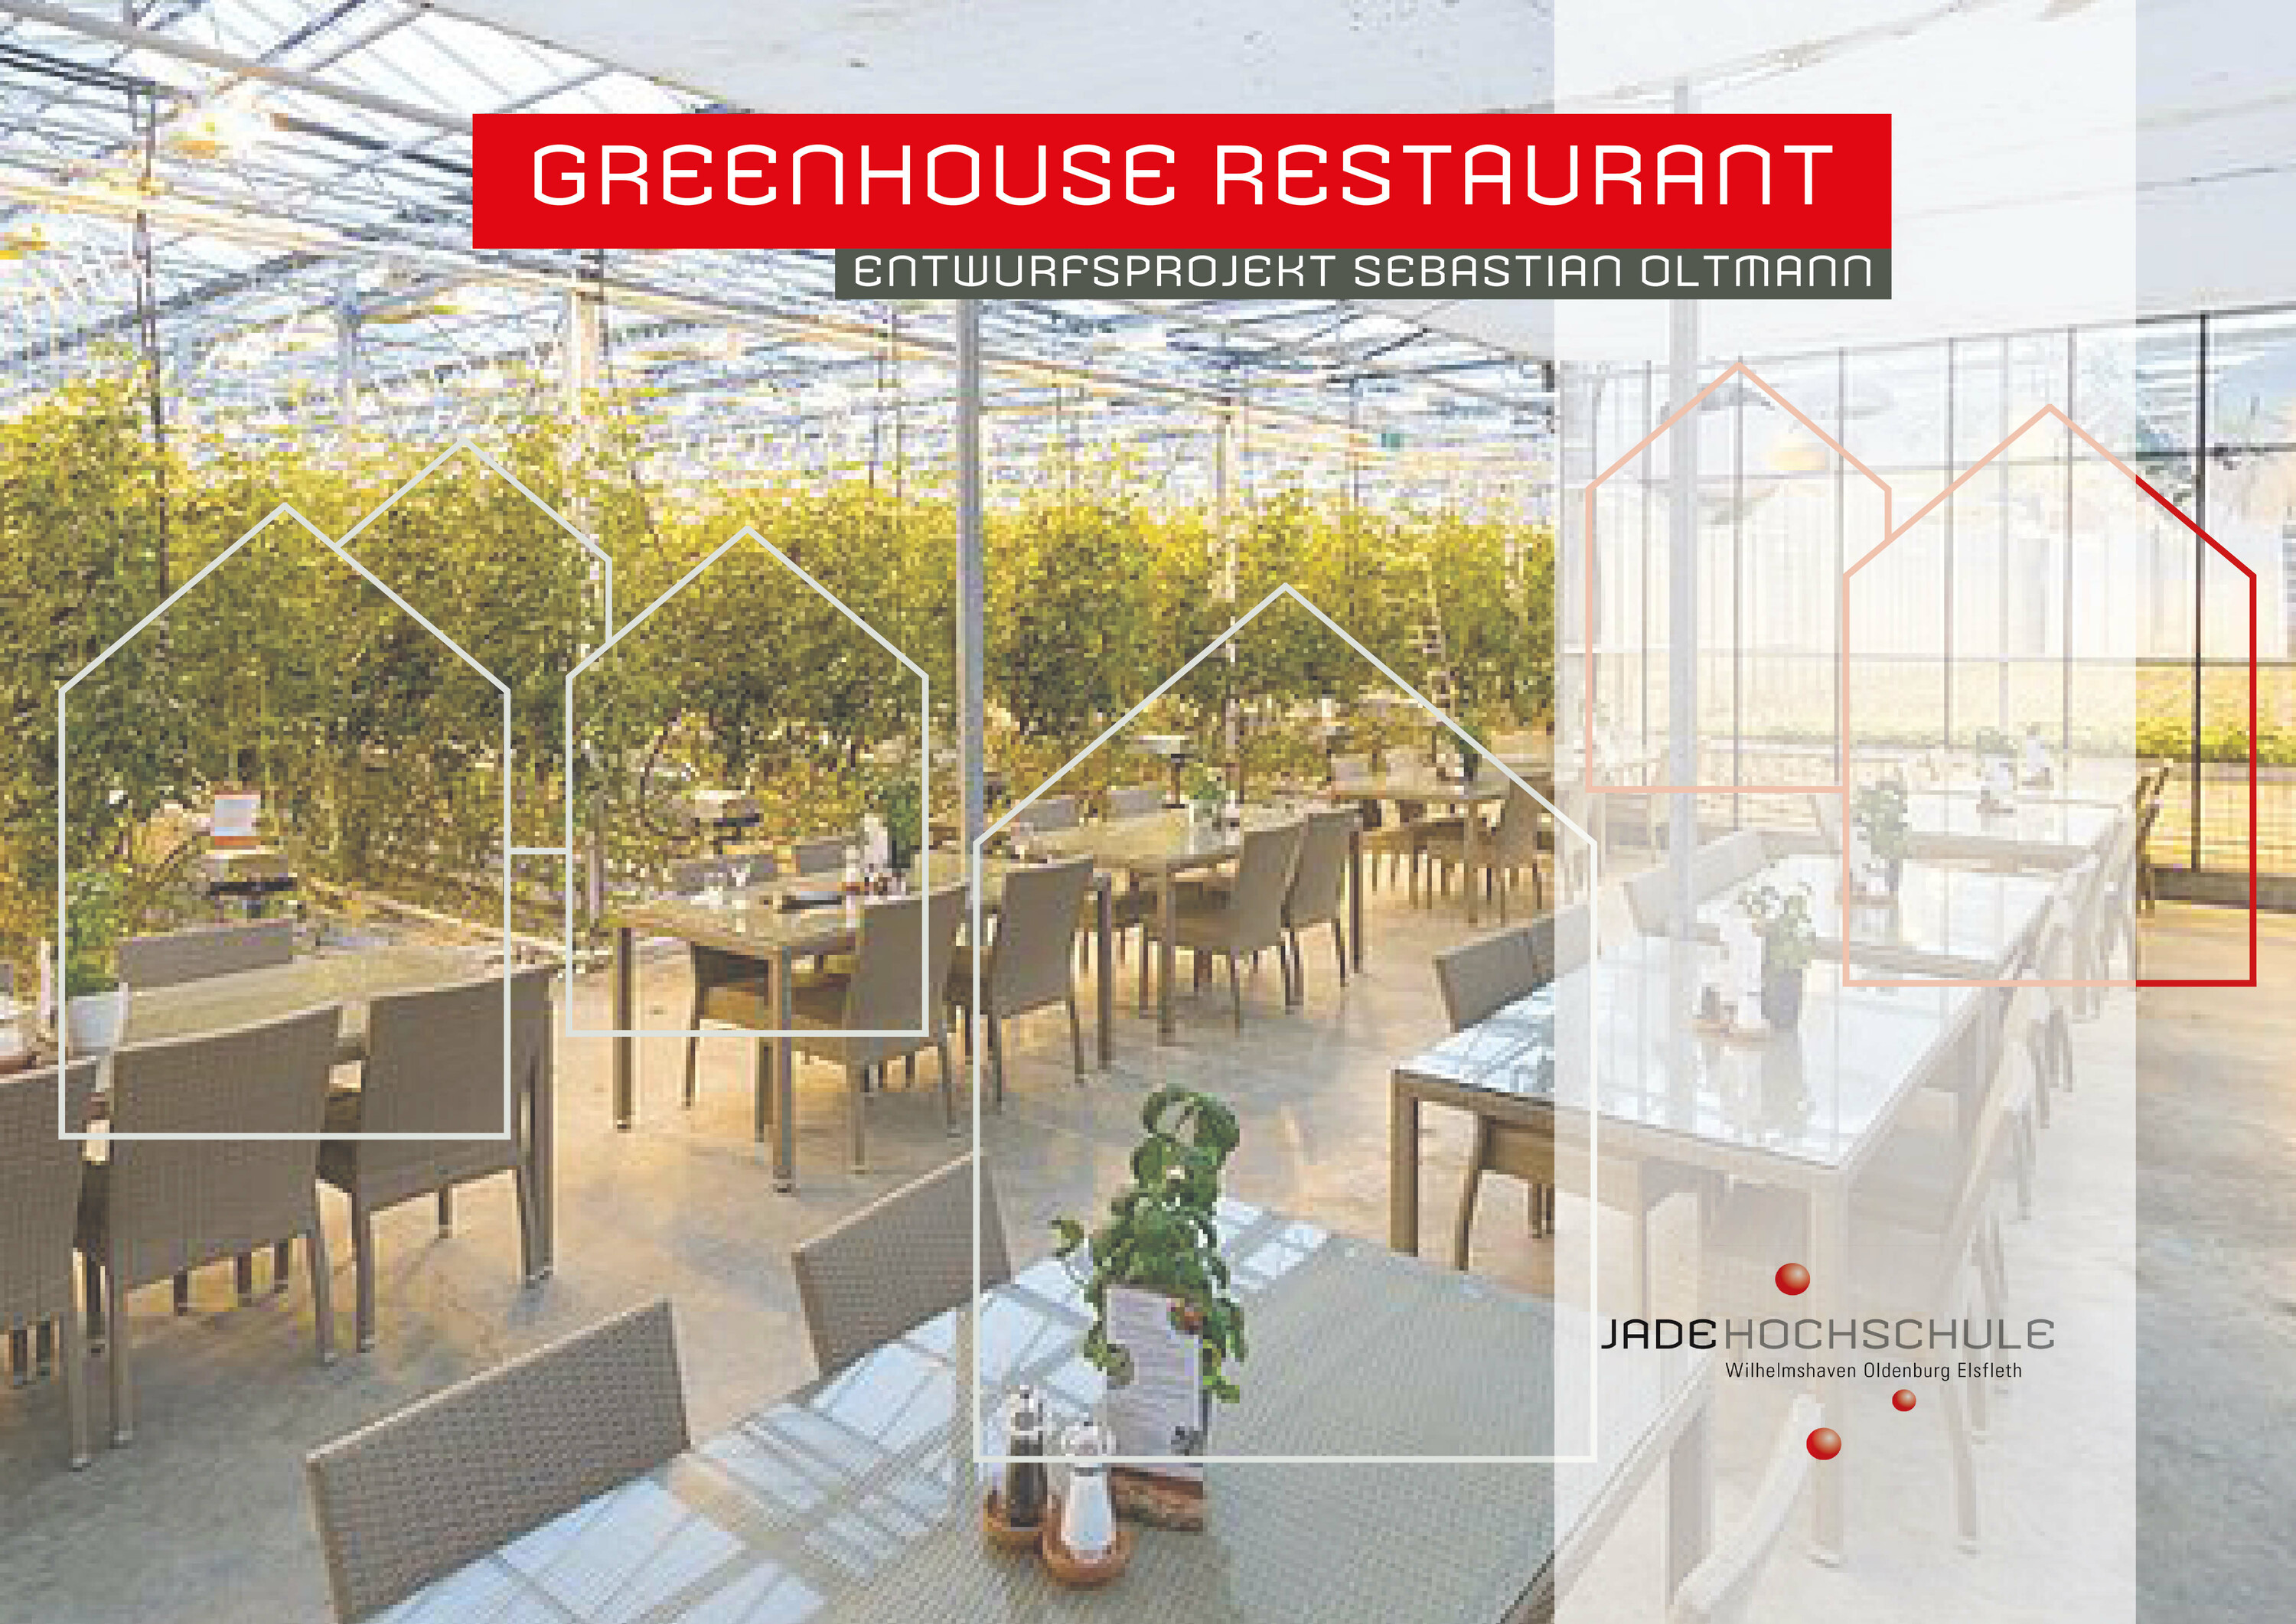 individuelles Entwurfsprojekt von Sebastian Oltmann: Greenhouse Restaurant